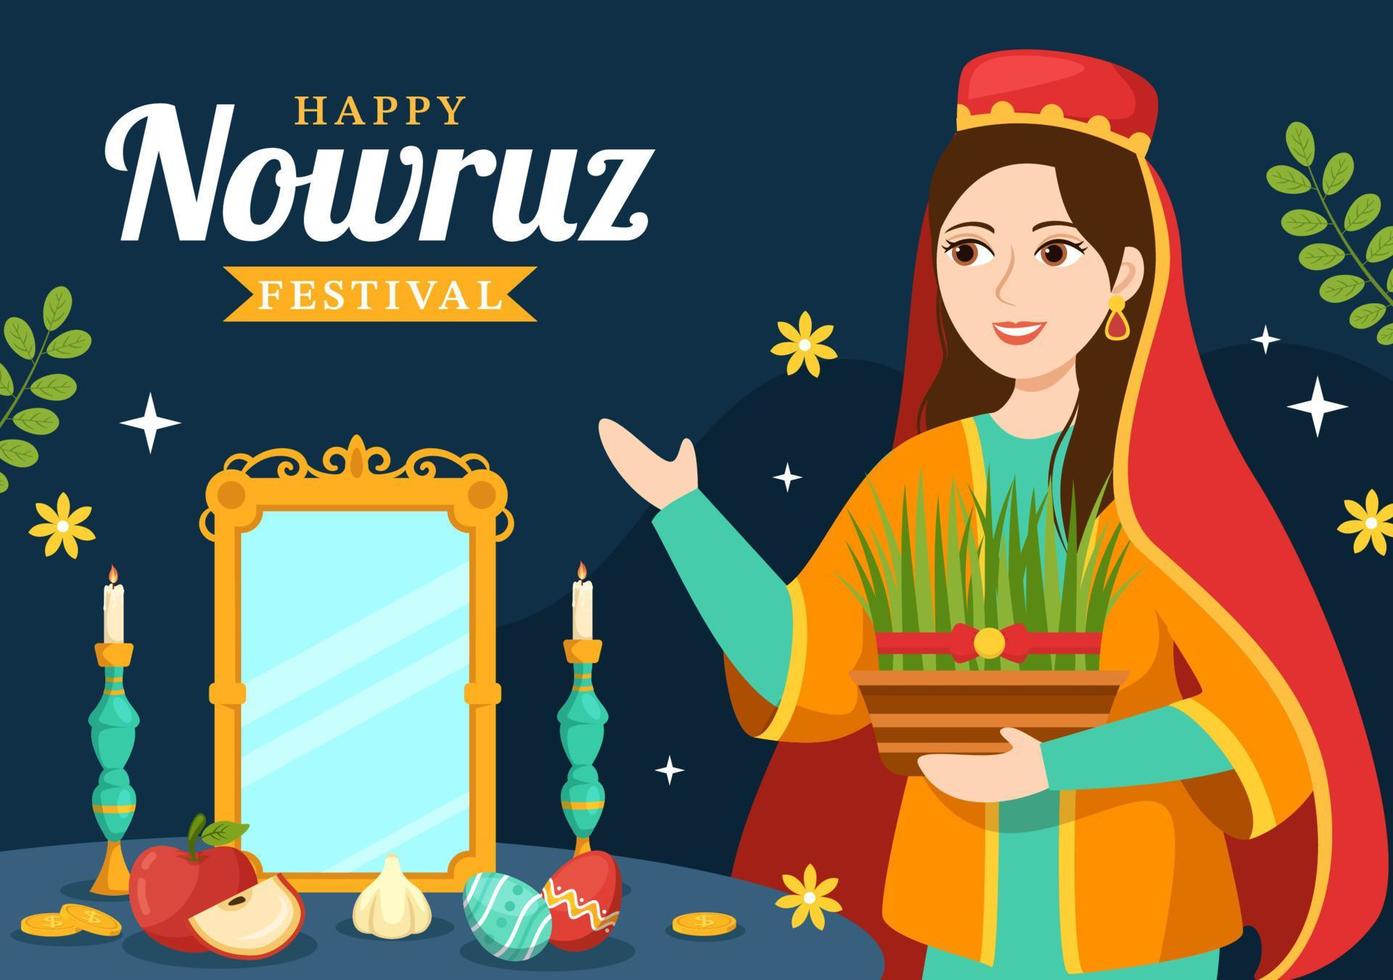 contento Nowruz giorno o iraniano nuovo anno illustrazione con erba semeni e pesce per ragnatela bandiera o atterraggio pagina nel piatto cartone animato mano disegnato modelli vettore